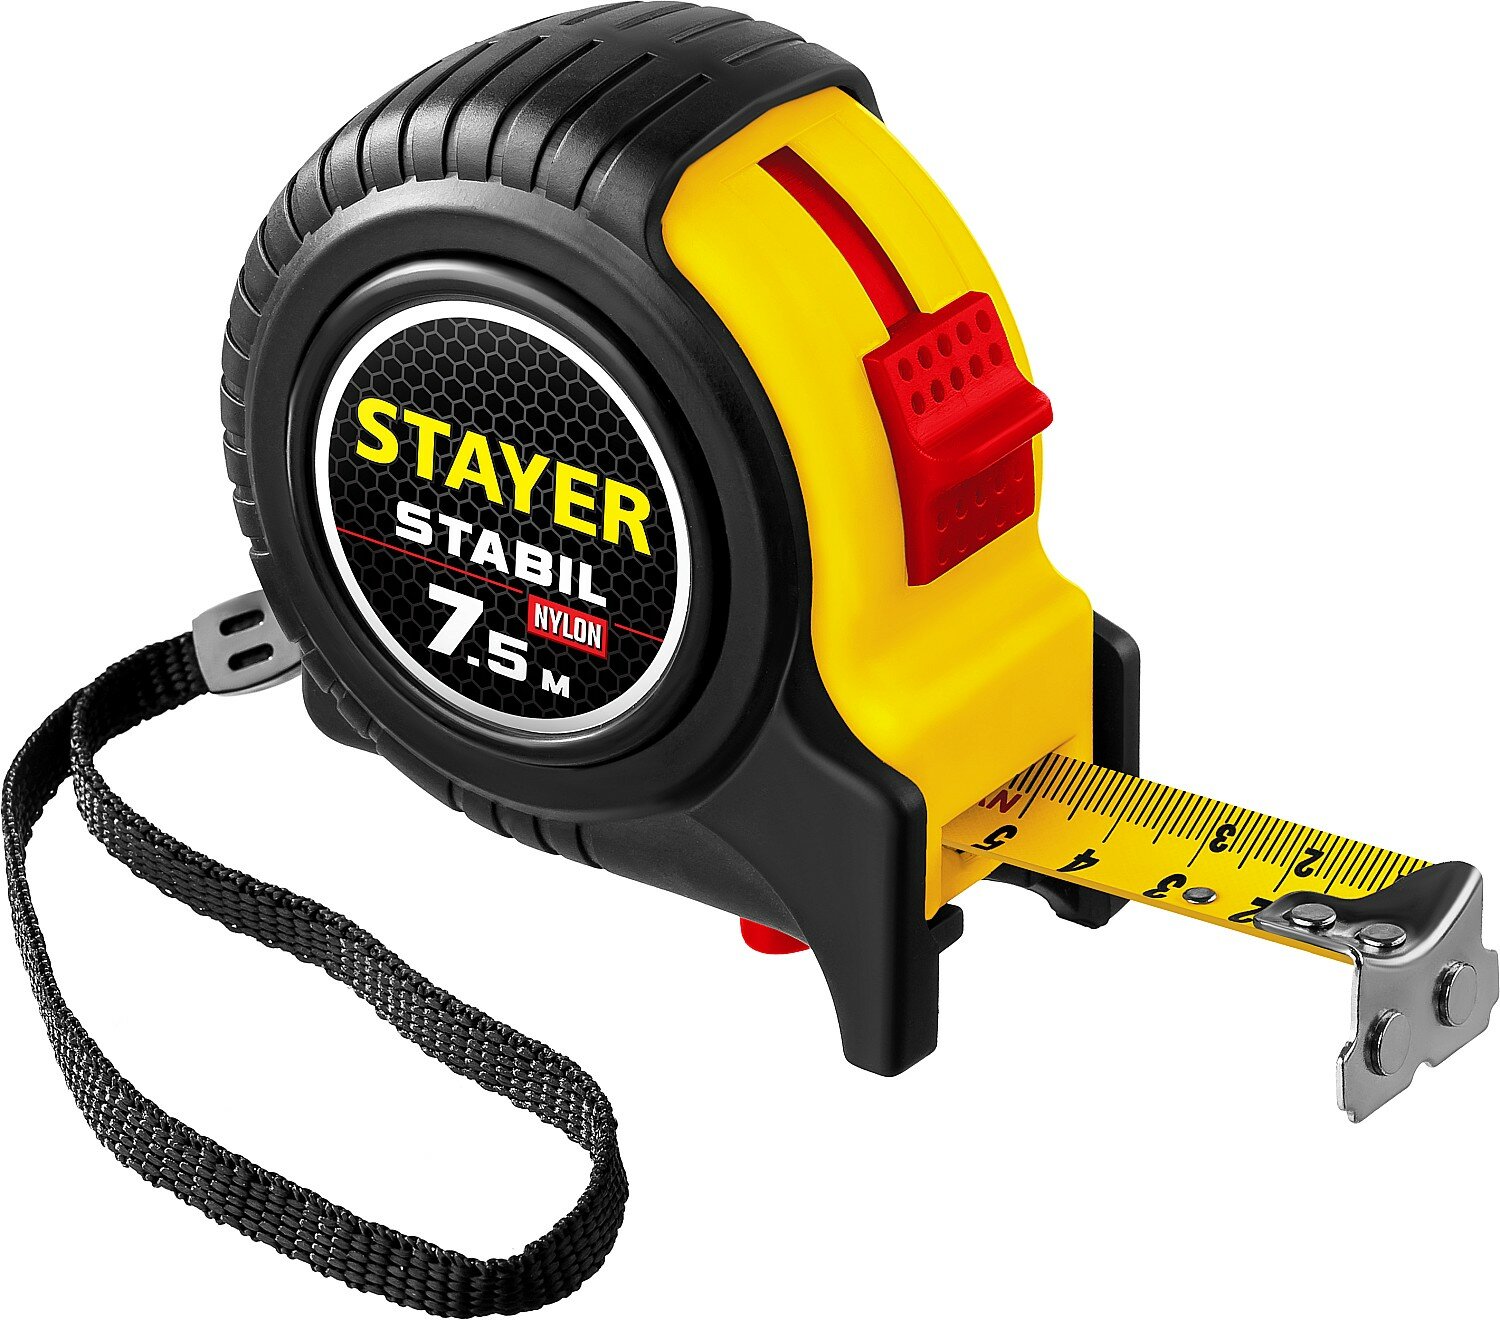 STAYER Stabil 7.5м х 25мм, Профессиональная рулетка с двухсторонней шкалой (34131-075) - фотография № 1